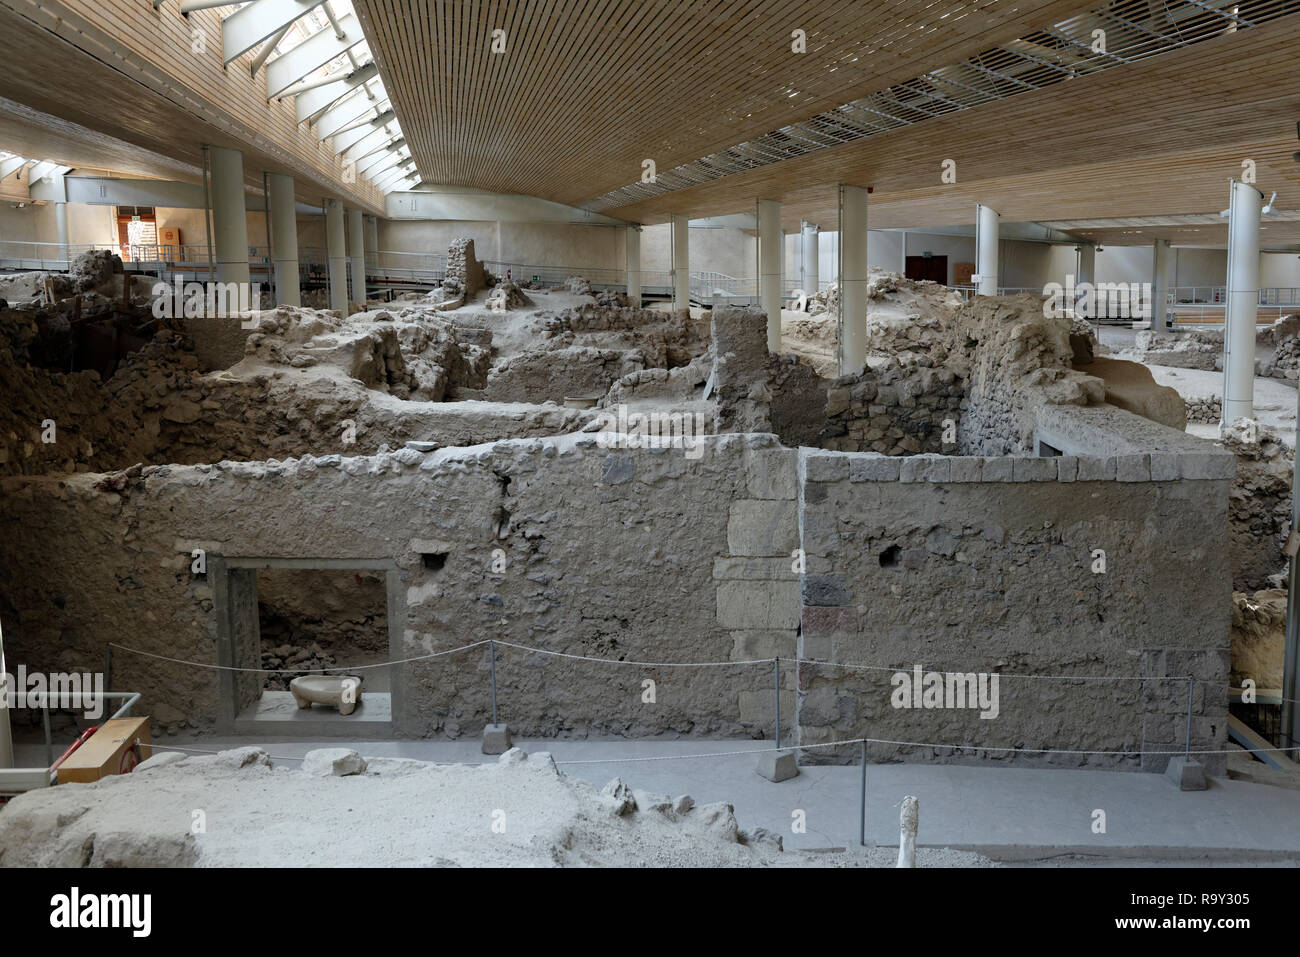 Il sito archeologico di Akrotiri, a Minoan Età del Bronzo insediamento la vulcanica isola greca di Santorini (Thera), in Grecia. La liquidazione è stata dest Foto Stock